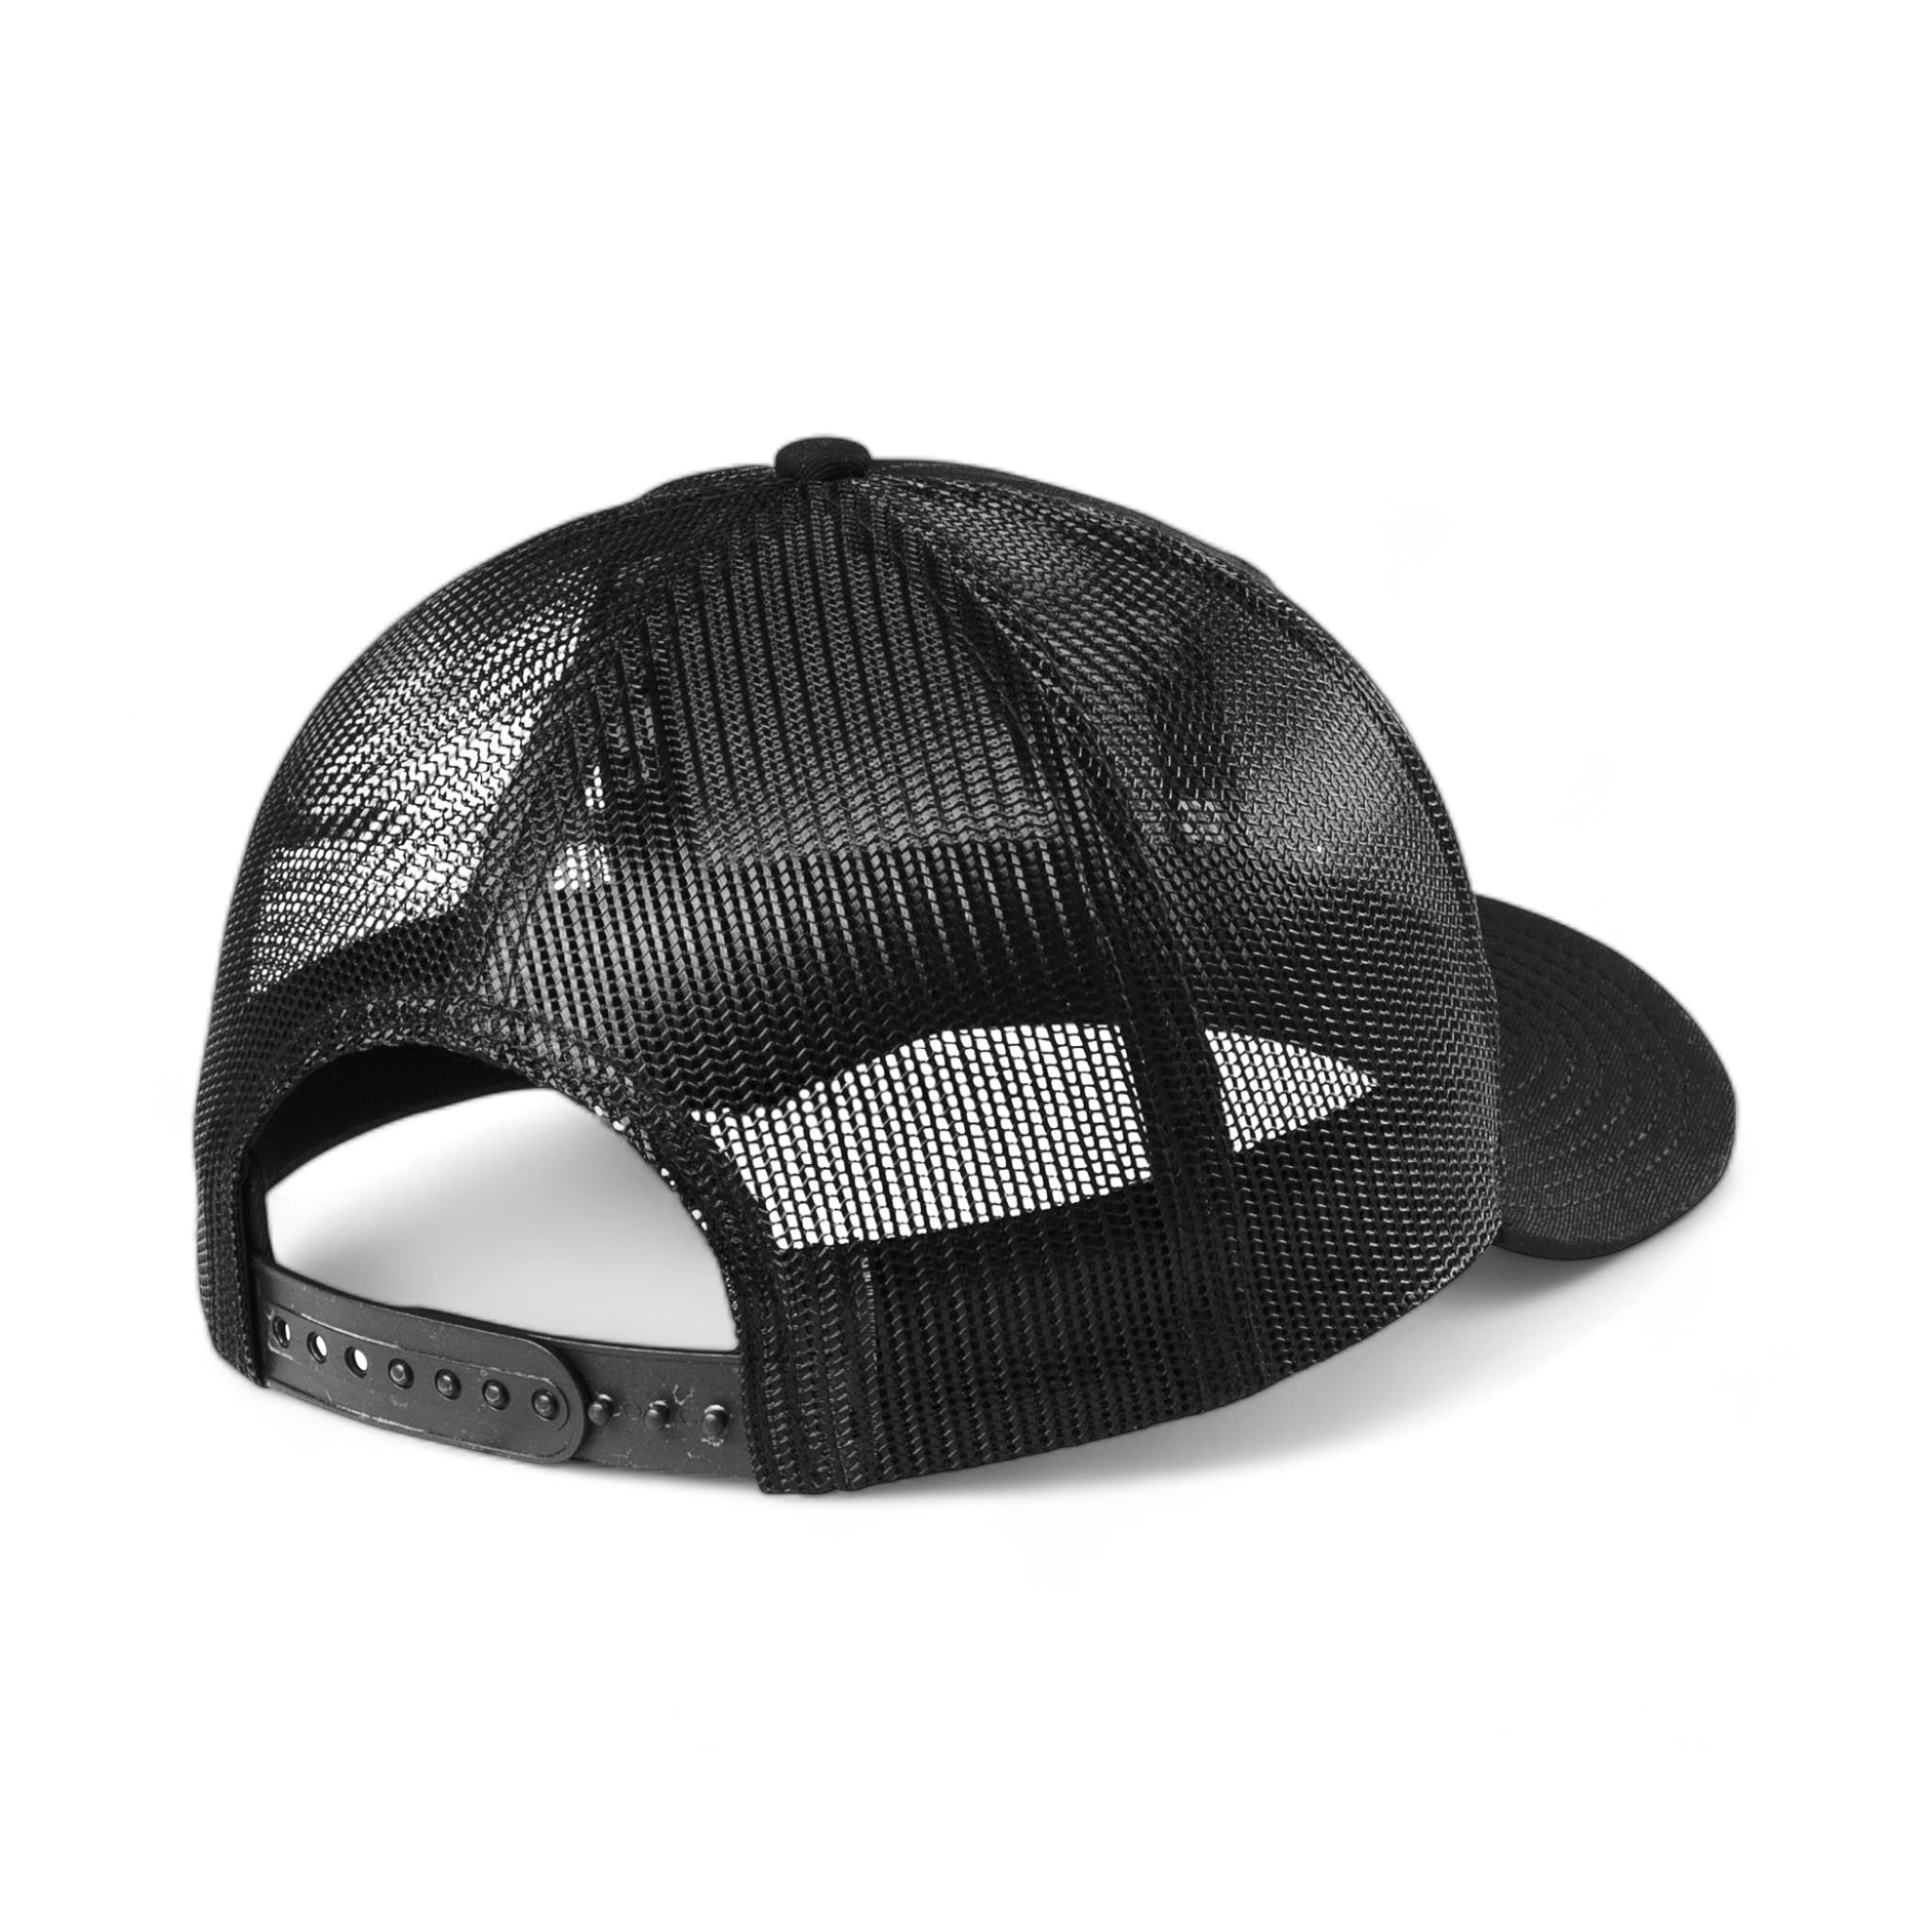 Back view of New Era NE207 custom hat in black